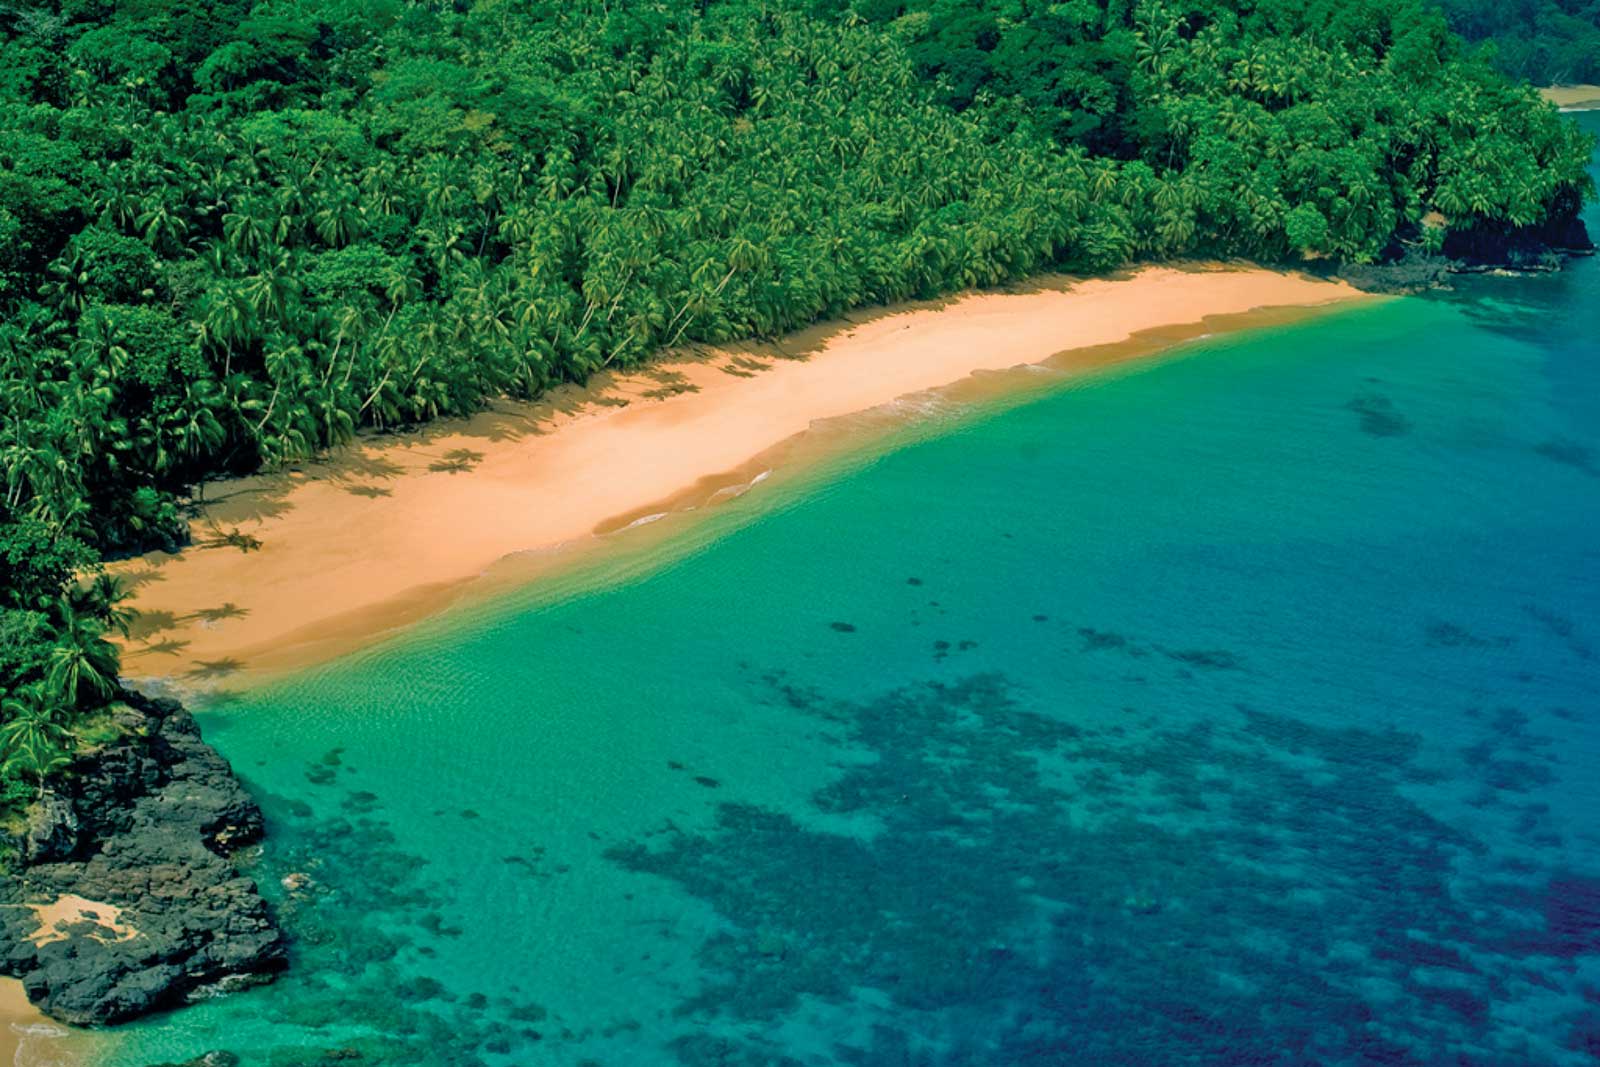 Baía das Agulhas, mer bleue et nature luxuriante, baie protégée de la zone ouest du parc naturel de Principe